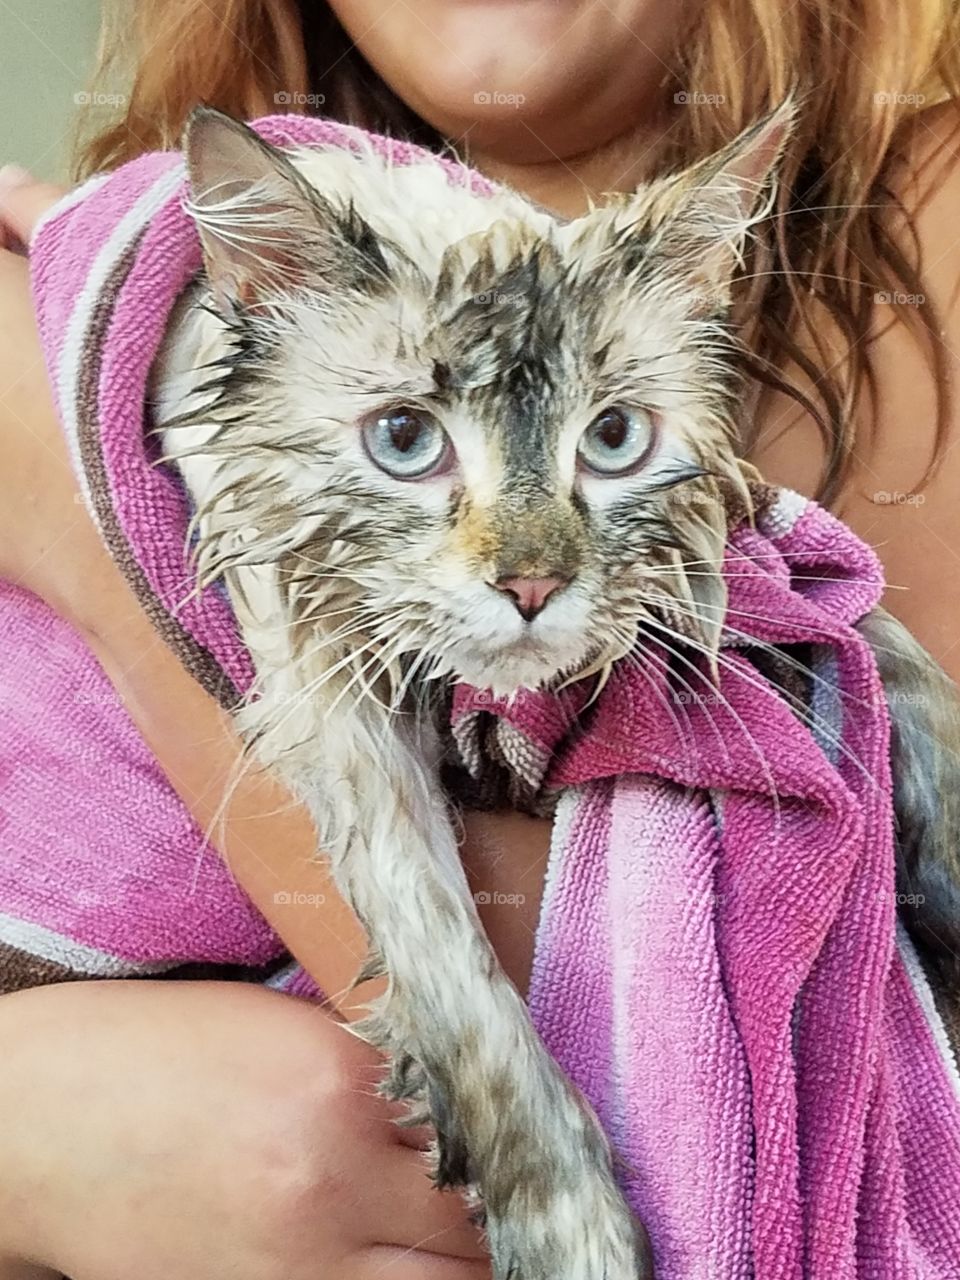 fluffy cat gets a bath